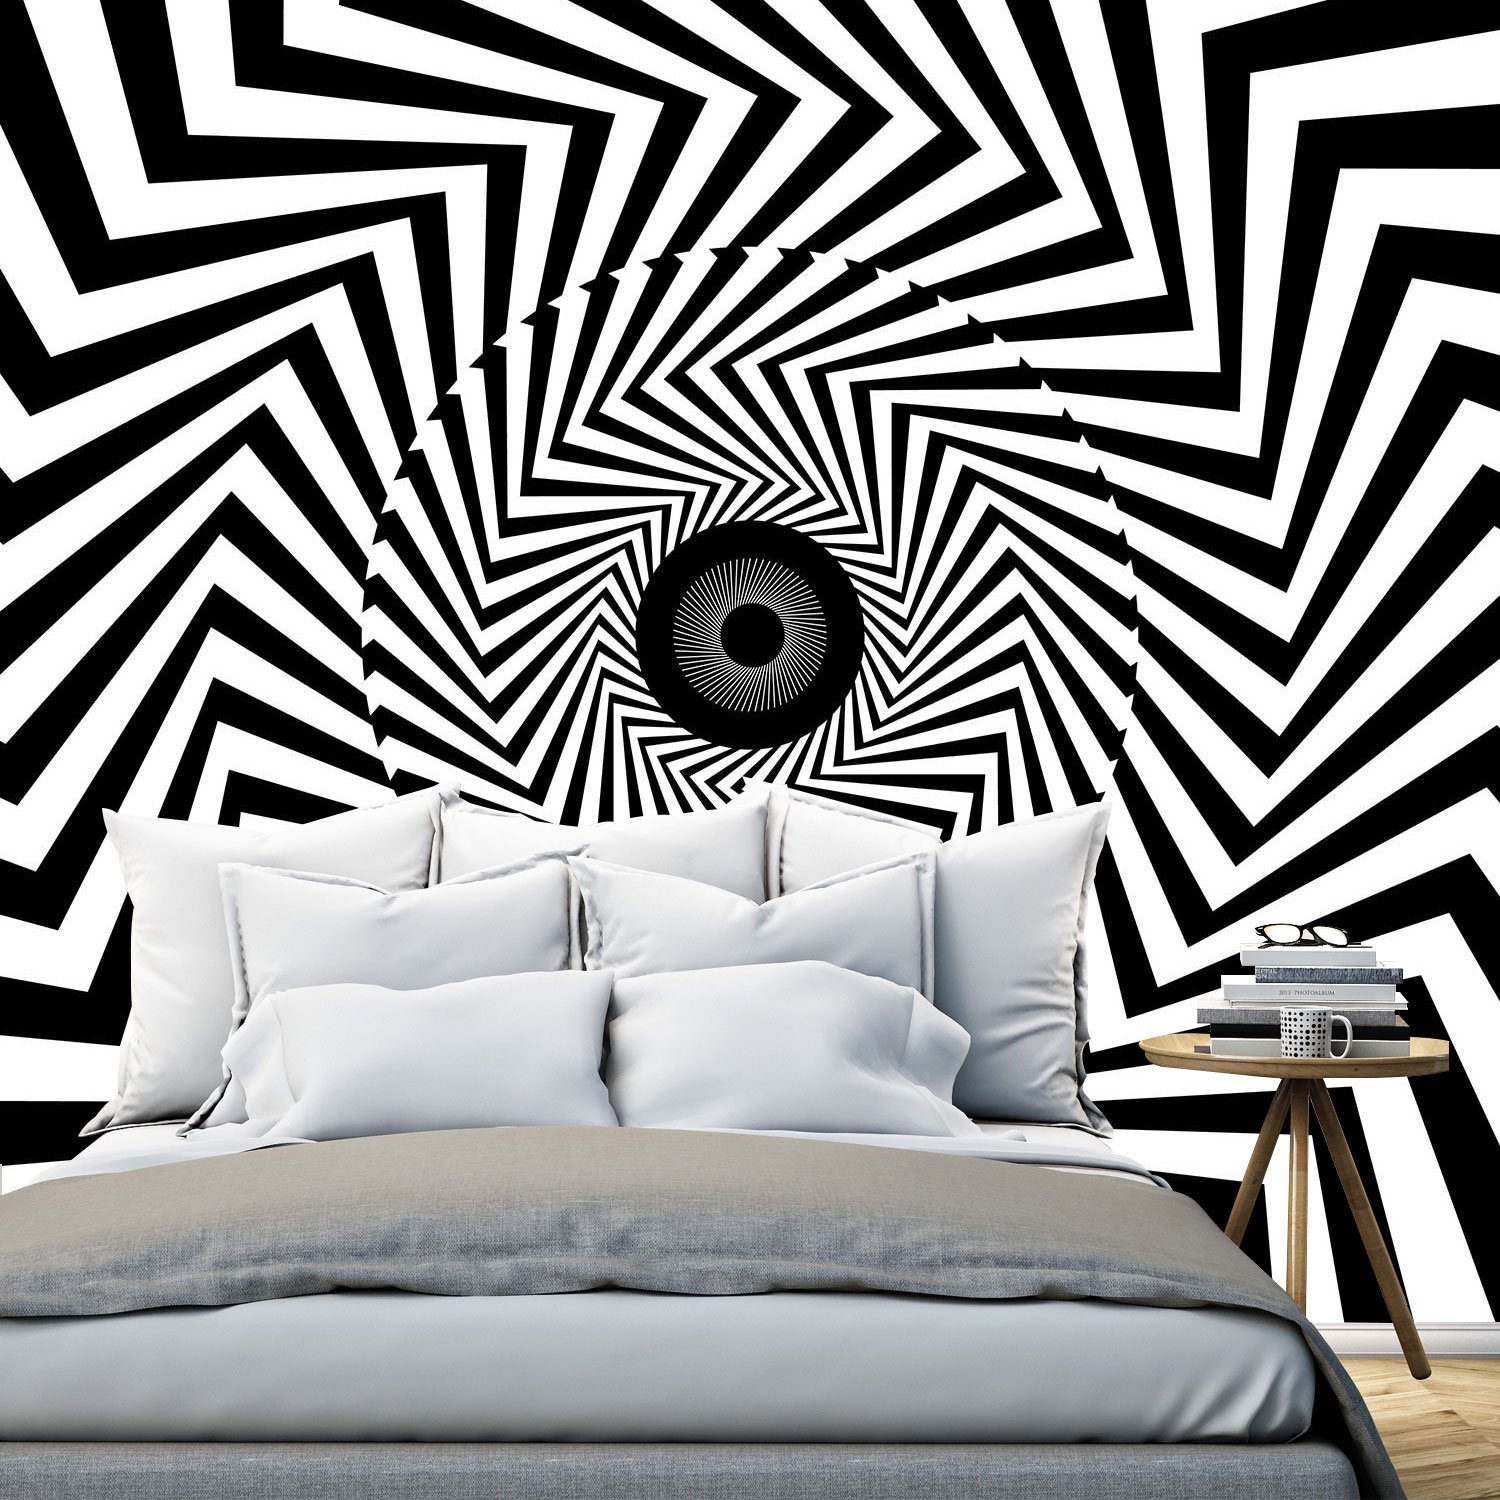 hypnotise_e – Print A Wallpaper